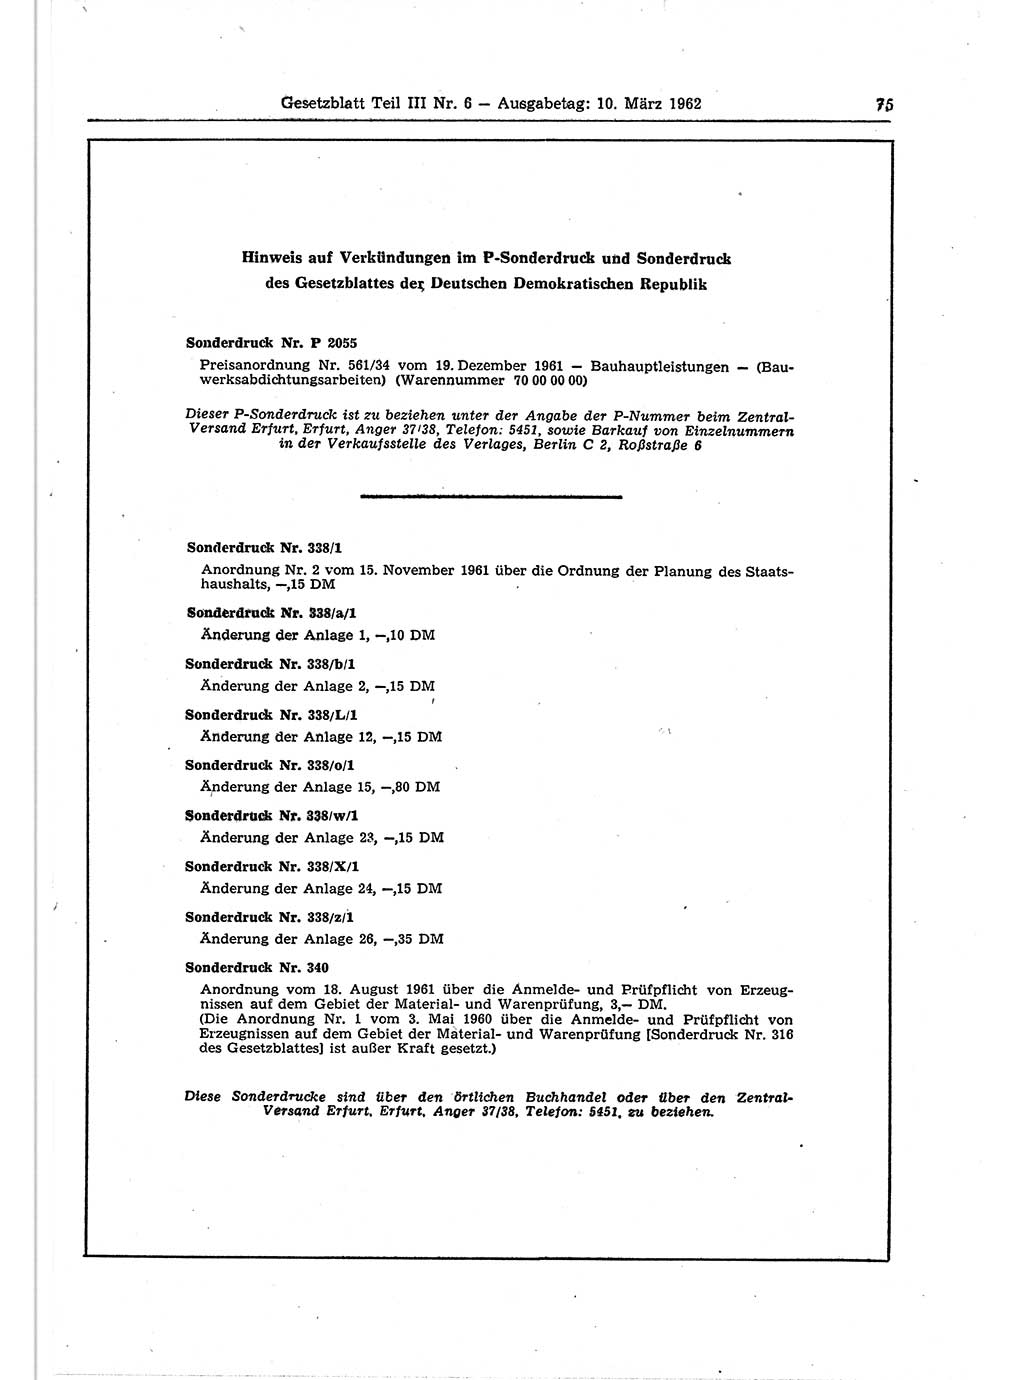 Gesetzblatt (GBl.) der Deutschen Demokratischen Republik (DDR) Teil ⅠⅠⅠ 1962, Seite 75 (GBl. DDR ⅠⅠⅠ 1962, S. 75)